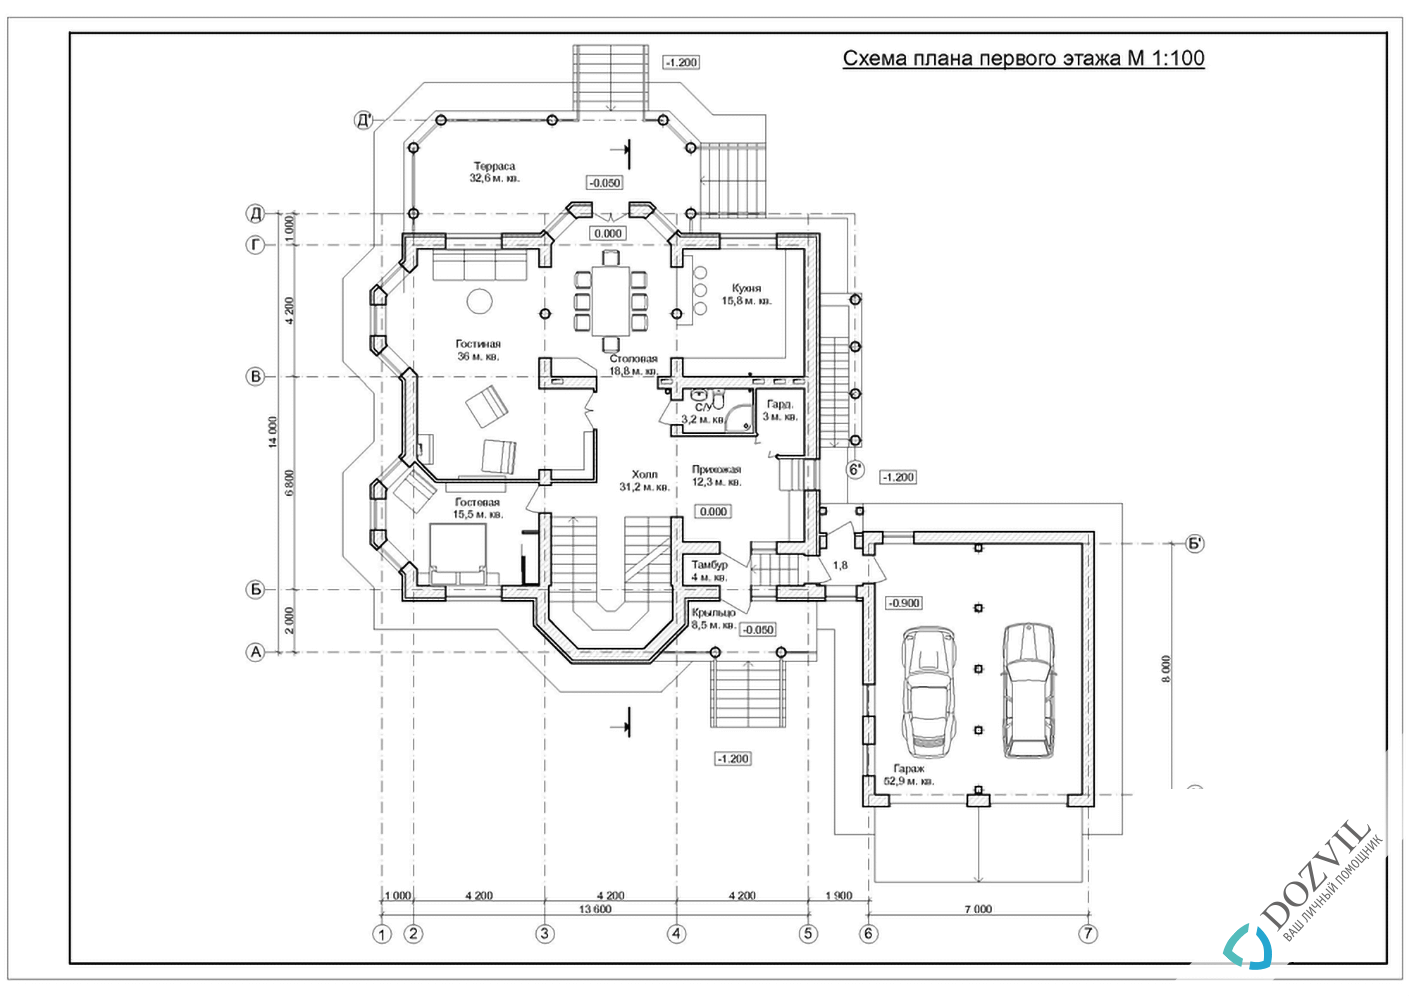 Разрешение на строительство> Дома с общей площадью до 500 квадратных метров > 2 этап - Разработка эскиза намерений строительства